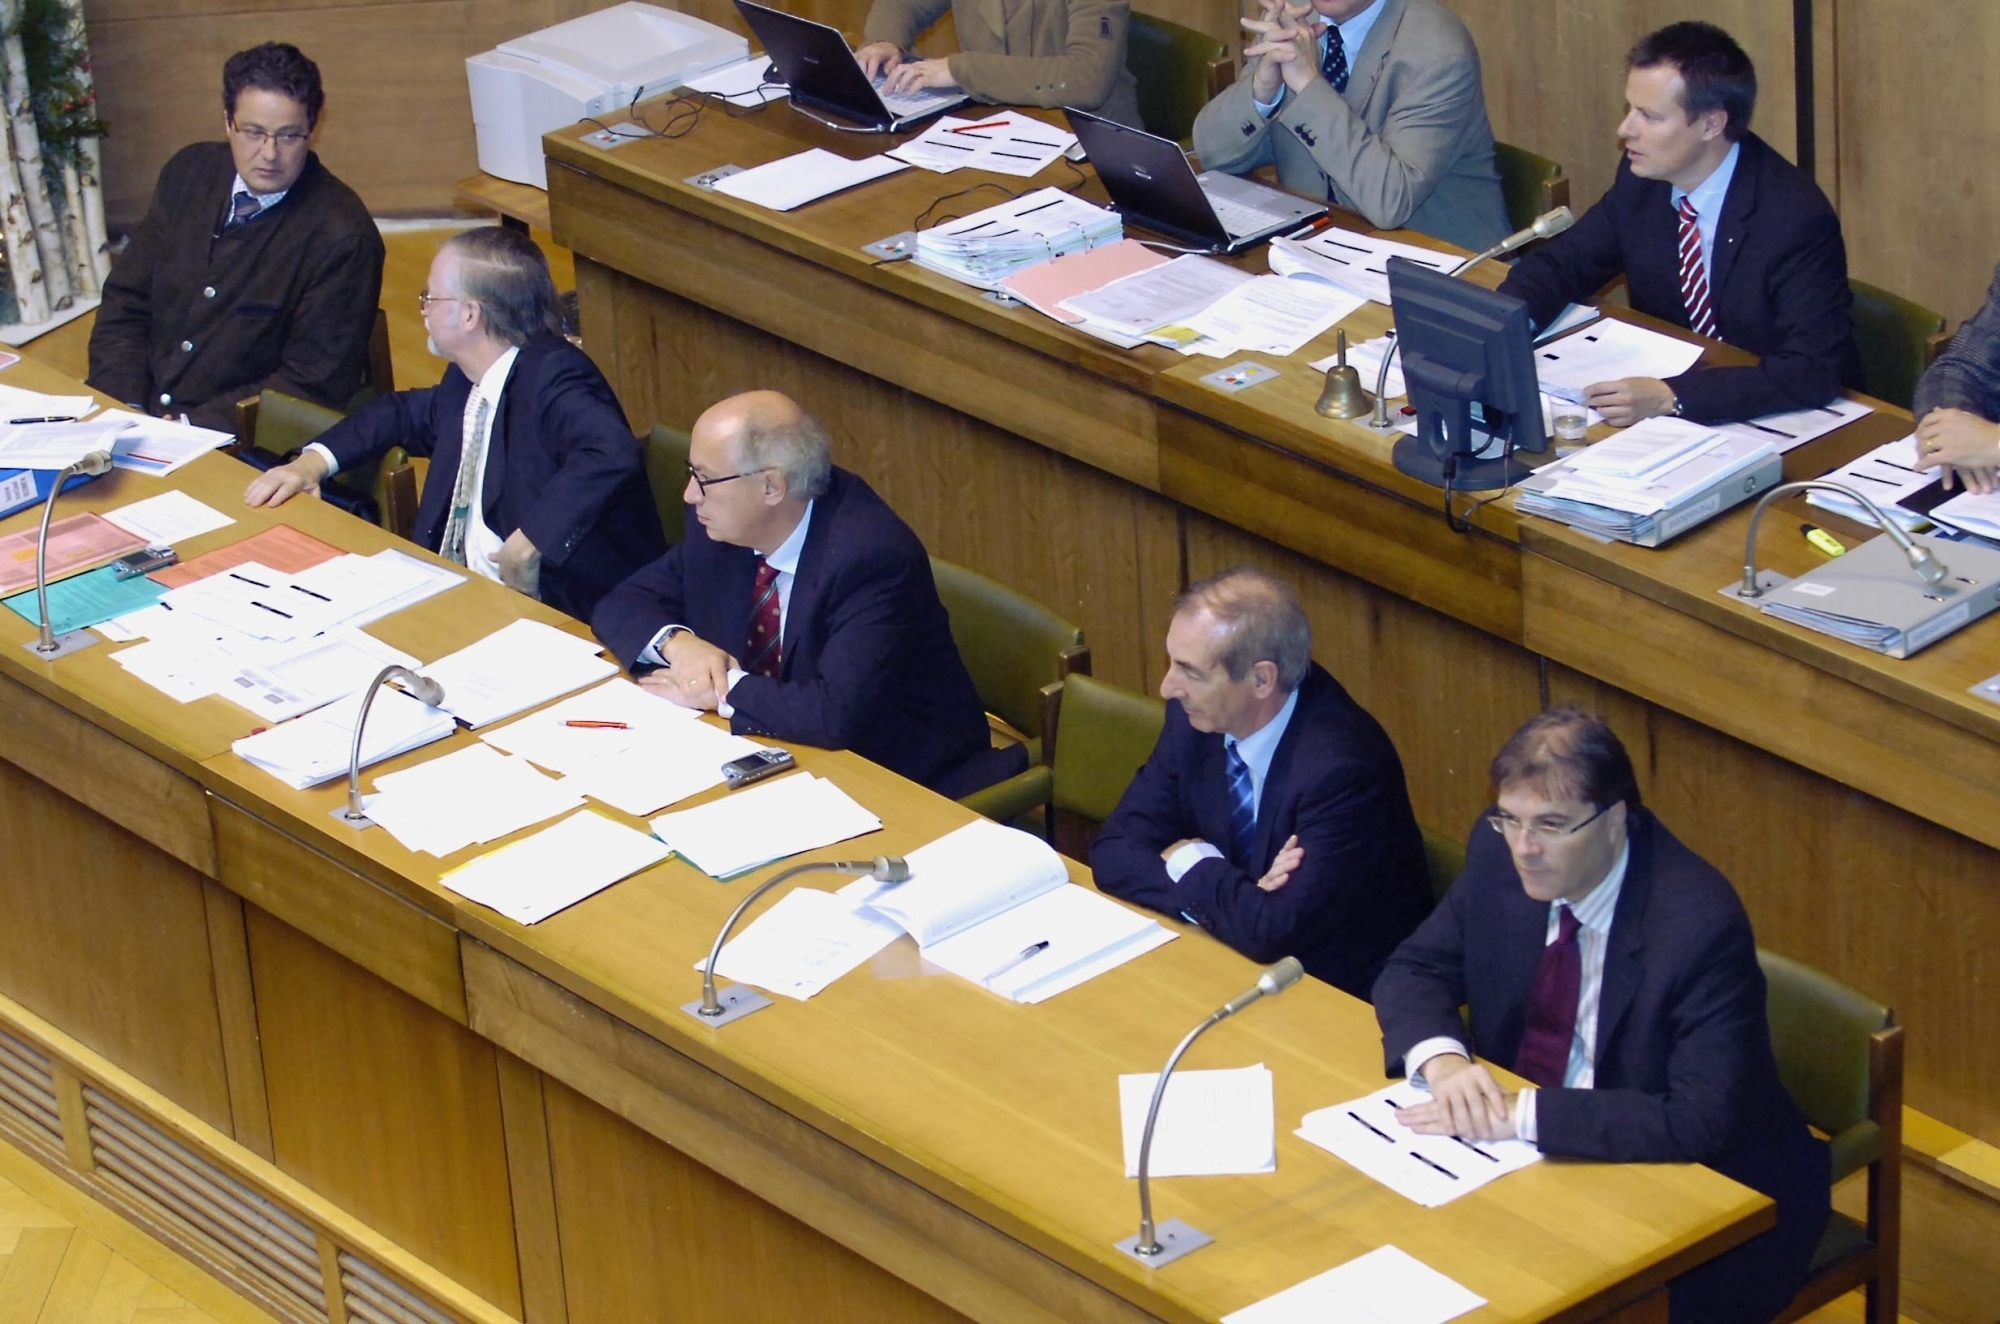 A l'image de 2005, le Conseil d'Etat sera-t-il composé de cinq hommes?